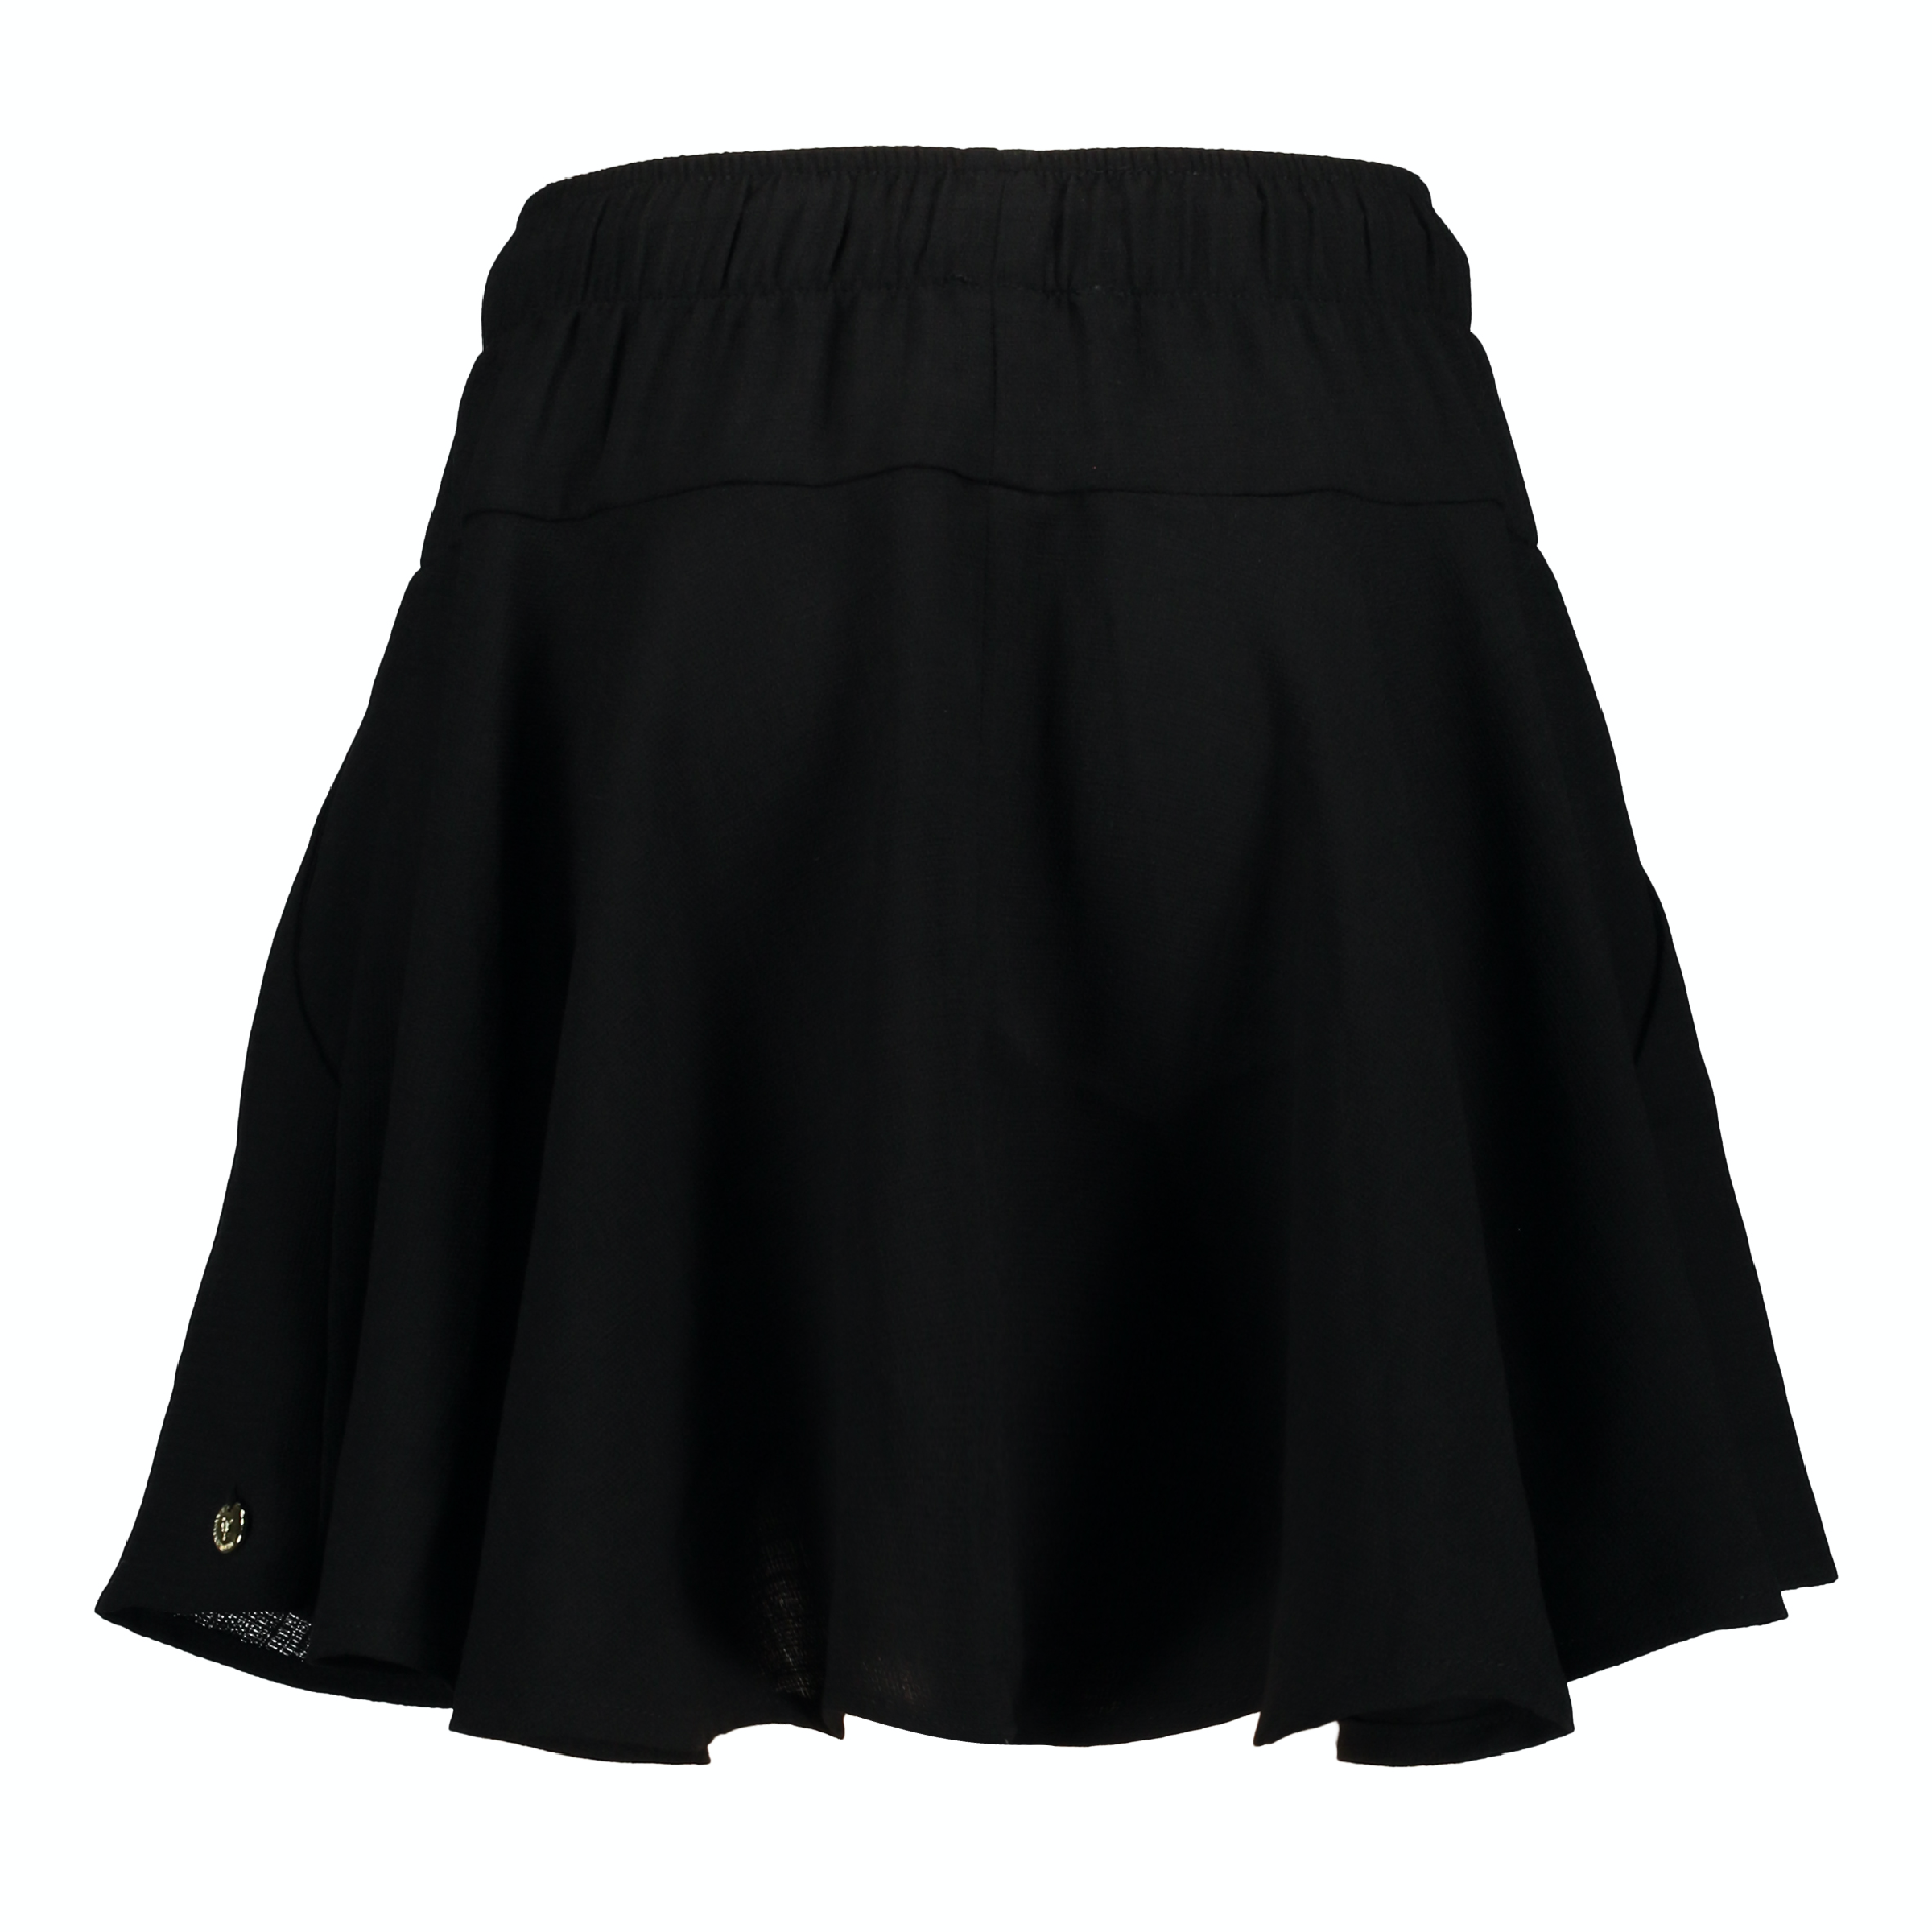 Meisjes Niene Skirt van Frankie & Lib in de kleur Black in maat 176.